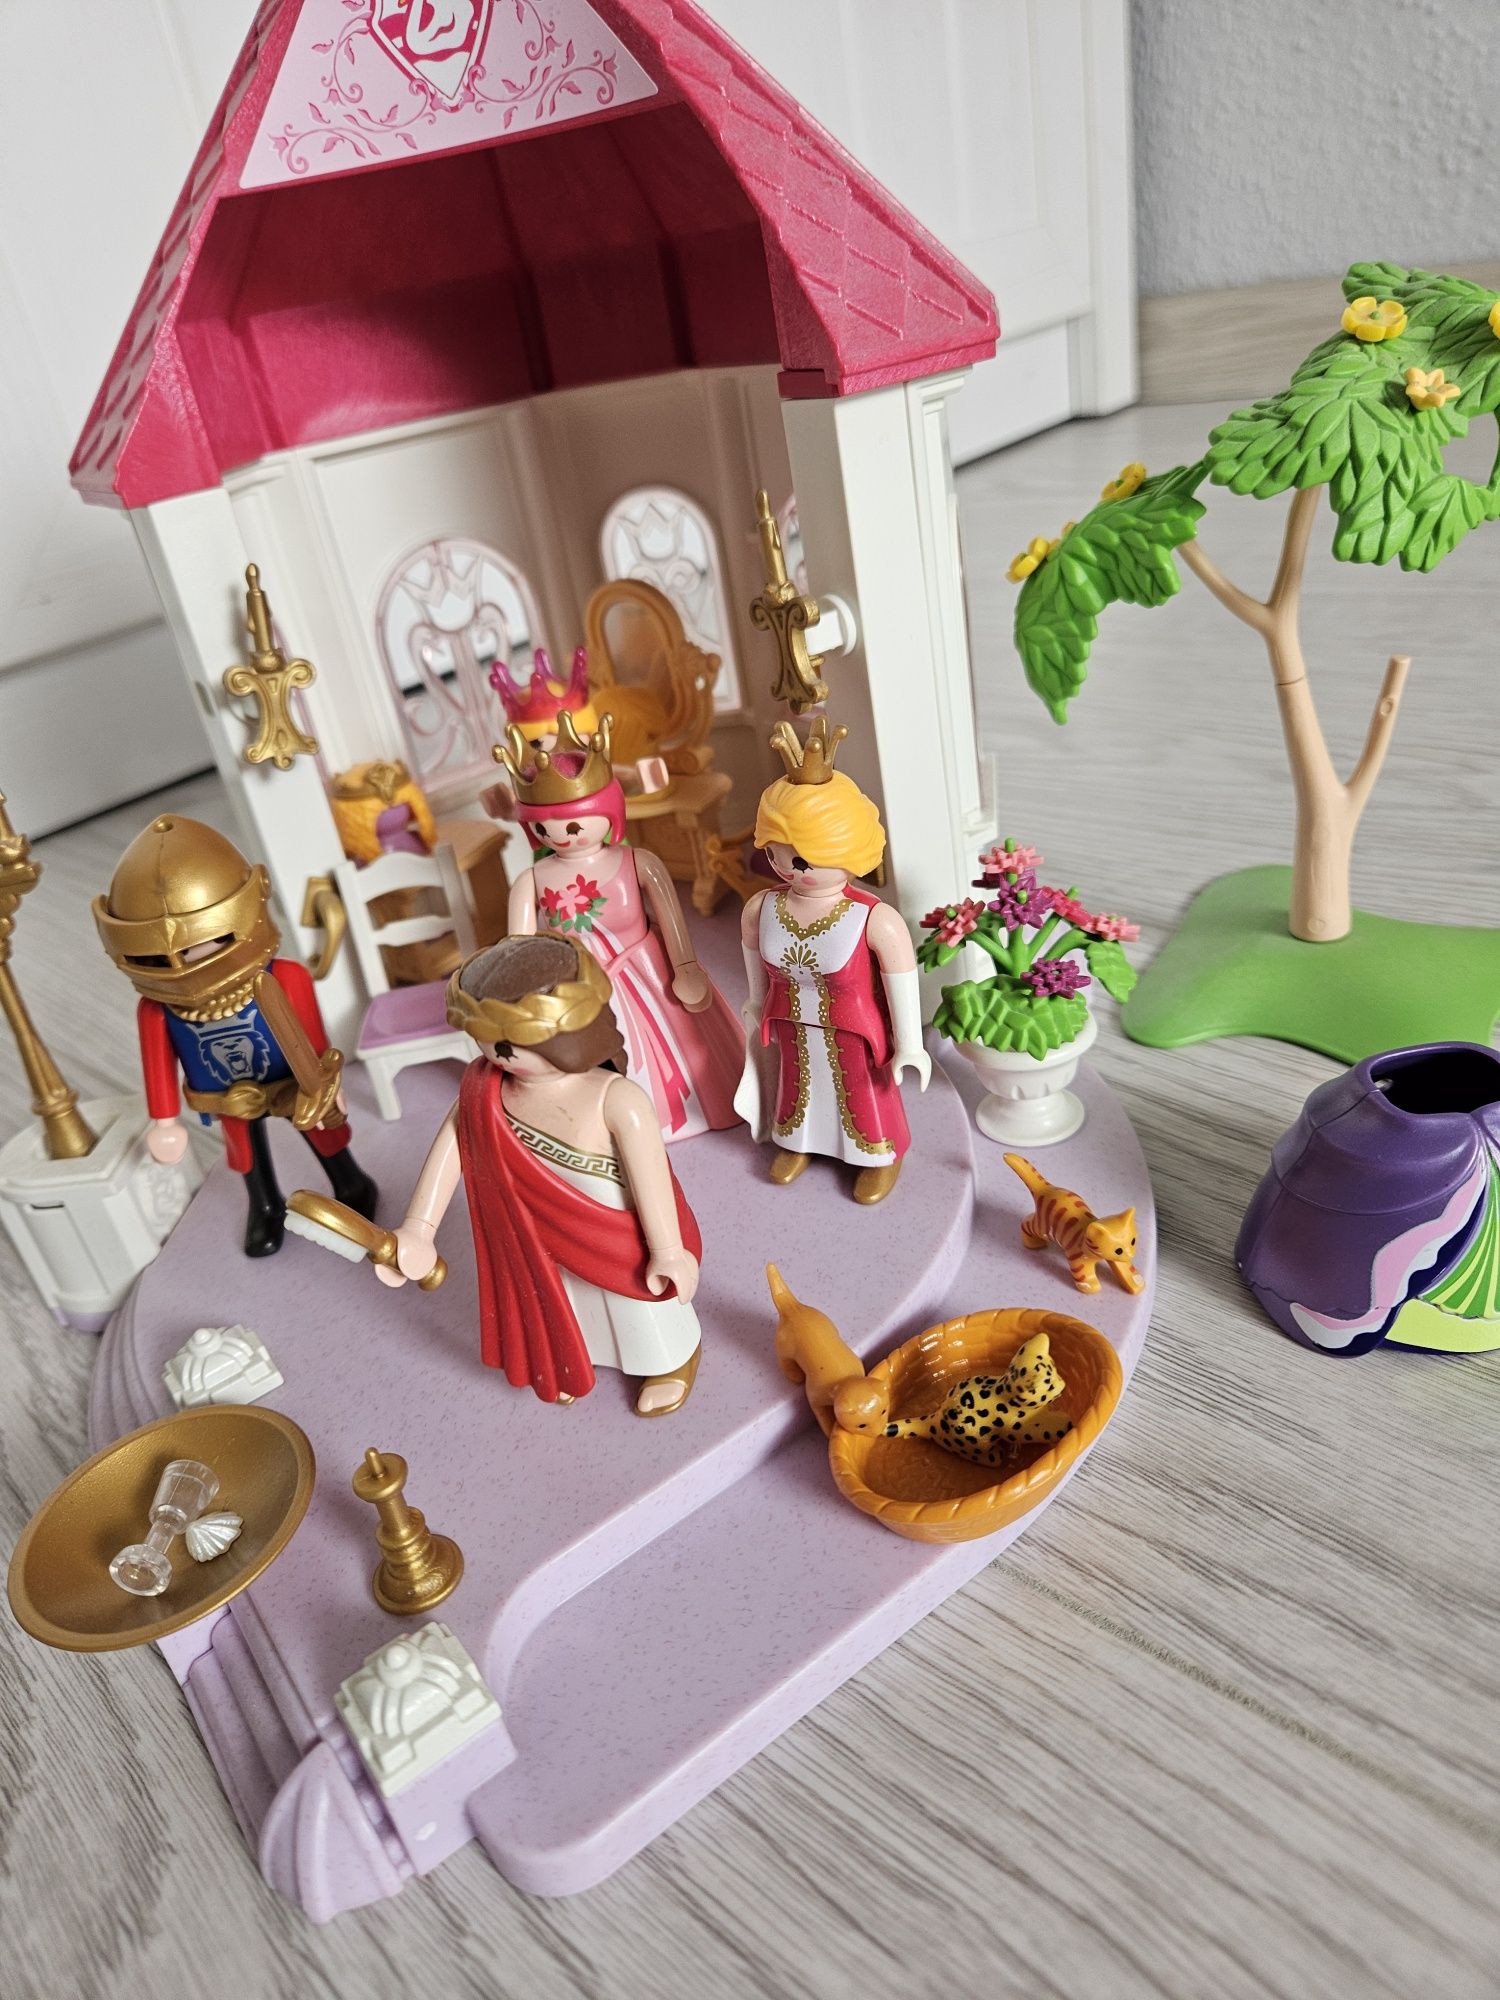 Playmobil pawilon królewski plus figurki